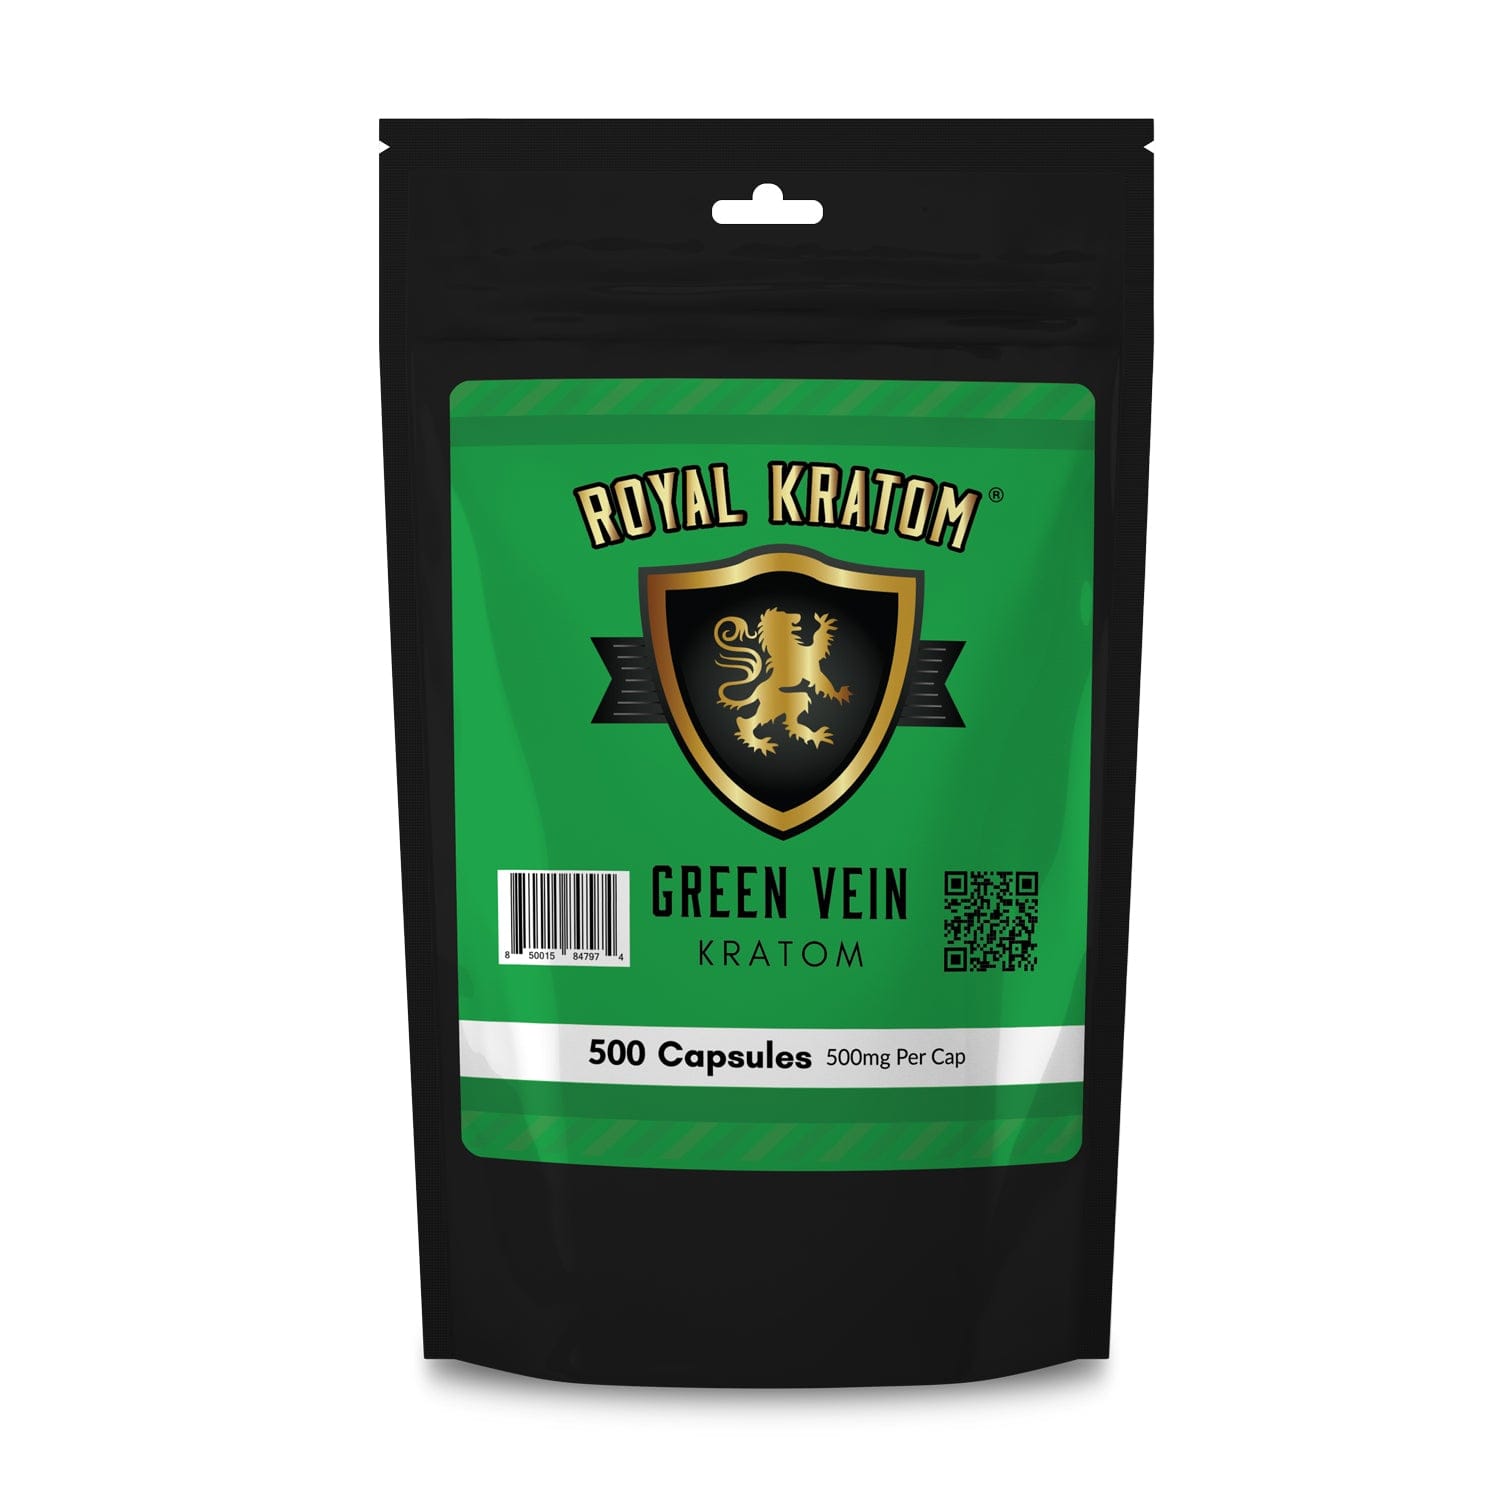 Royal Kratom green vein kratom capsules 500 count package